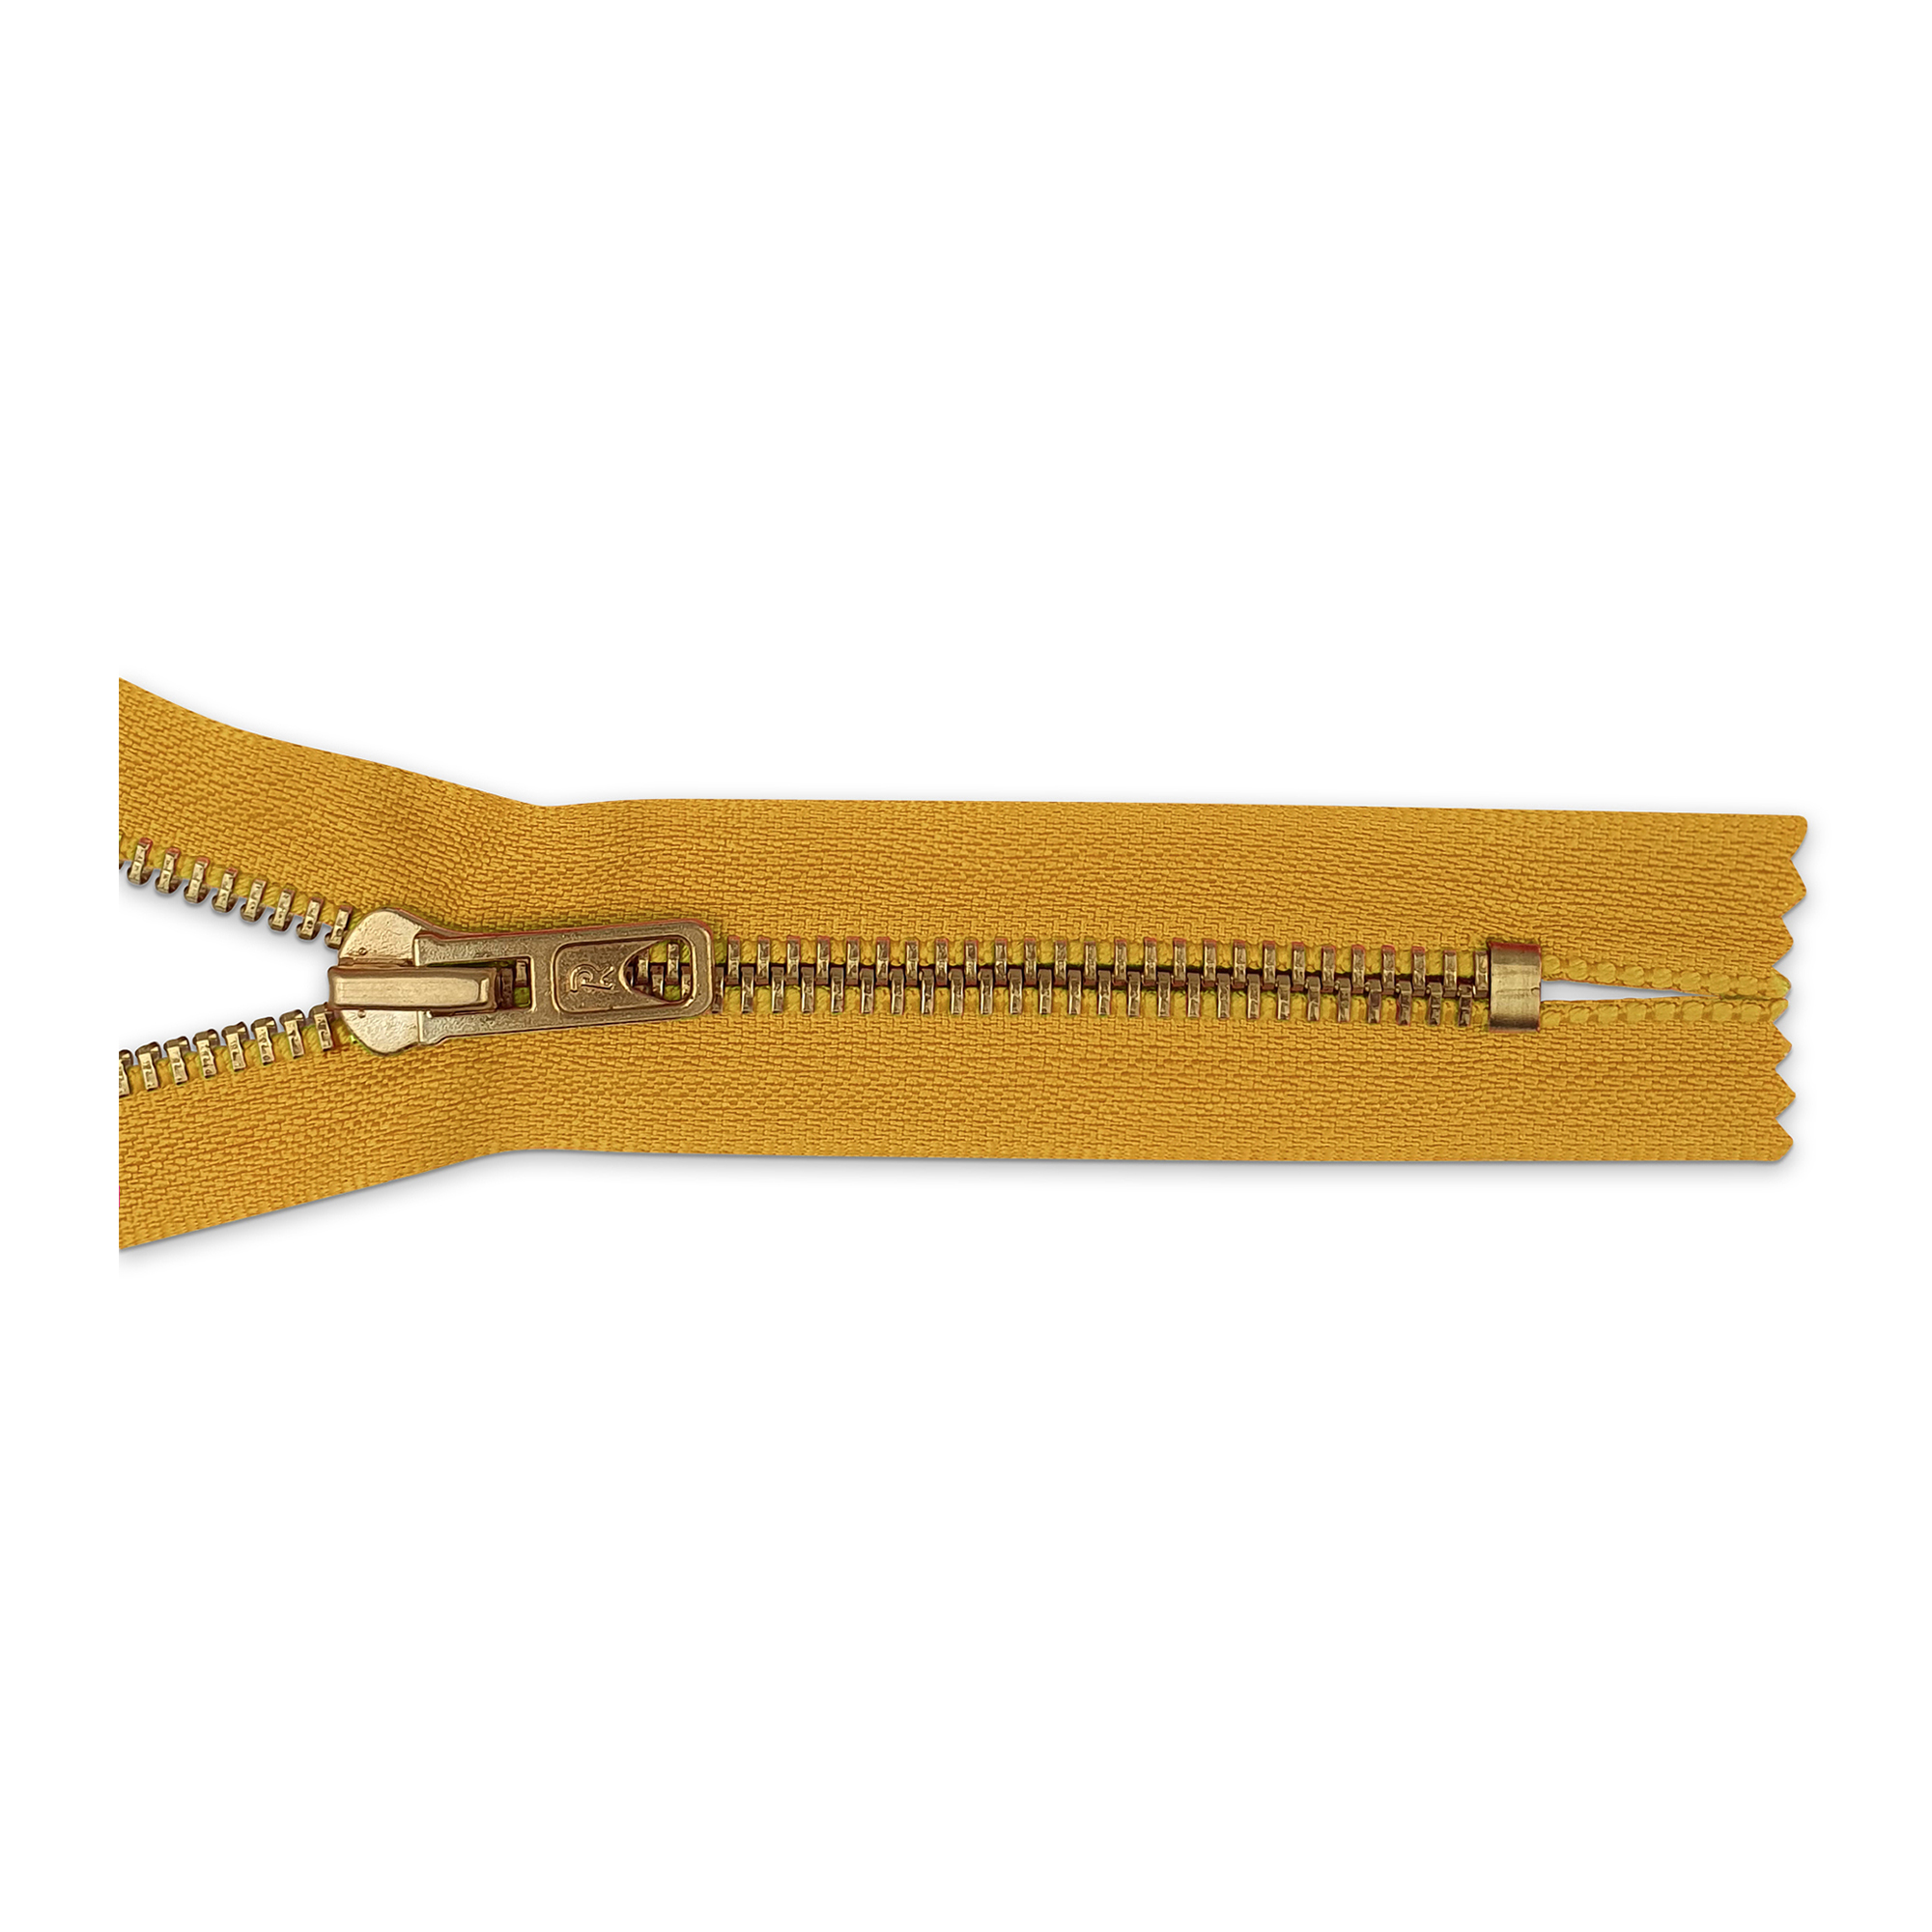 Reißverschluss 14cm, nicht teilbar, Metall goldf. breit, goldgelb, hochwertiger Marken-Reißverschluss von Rubi/Barcelona